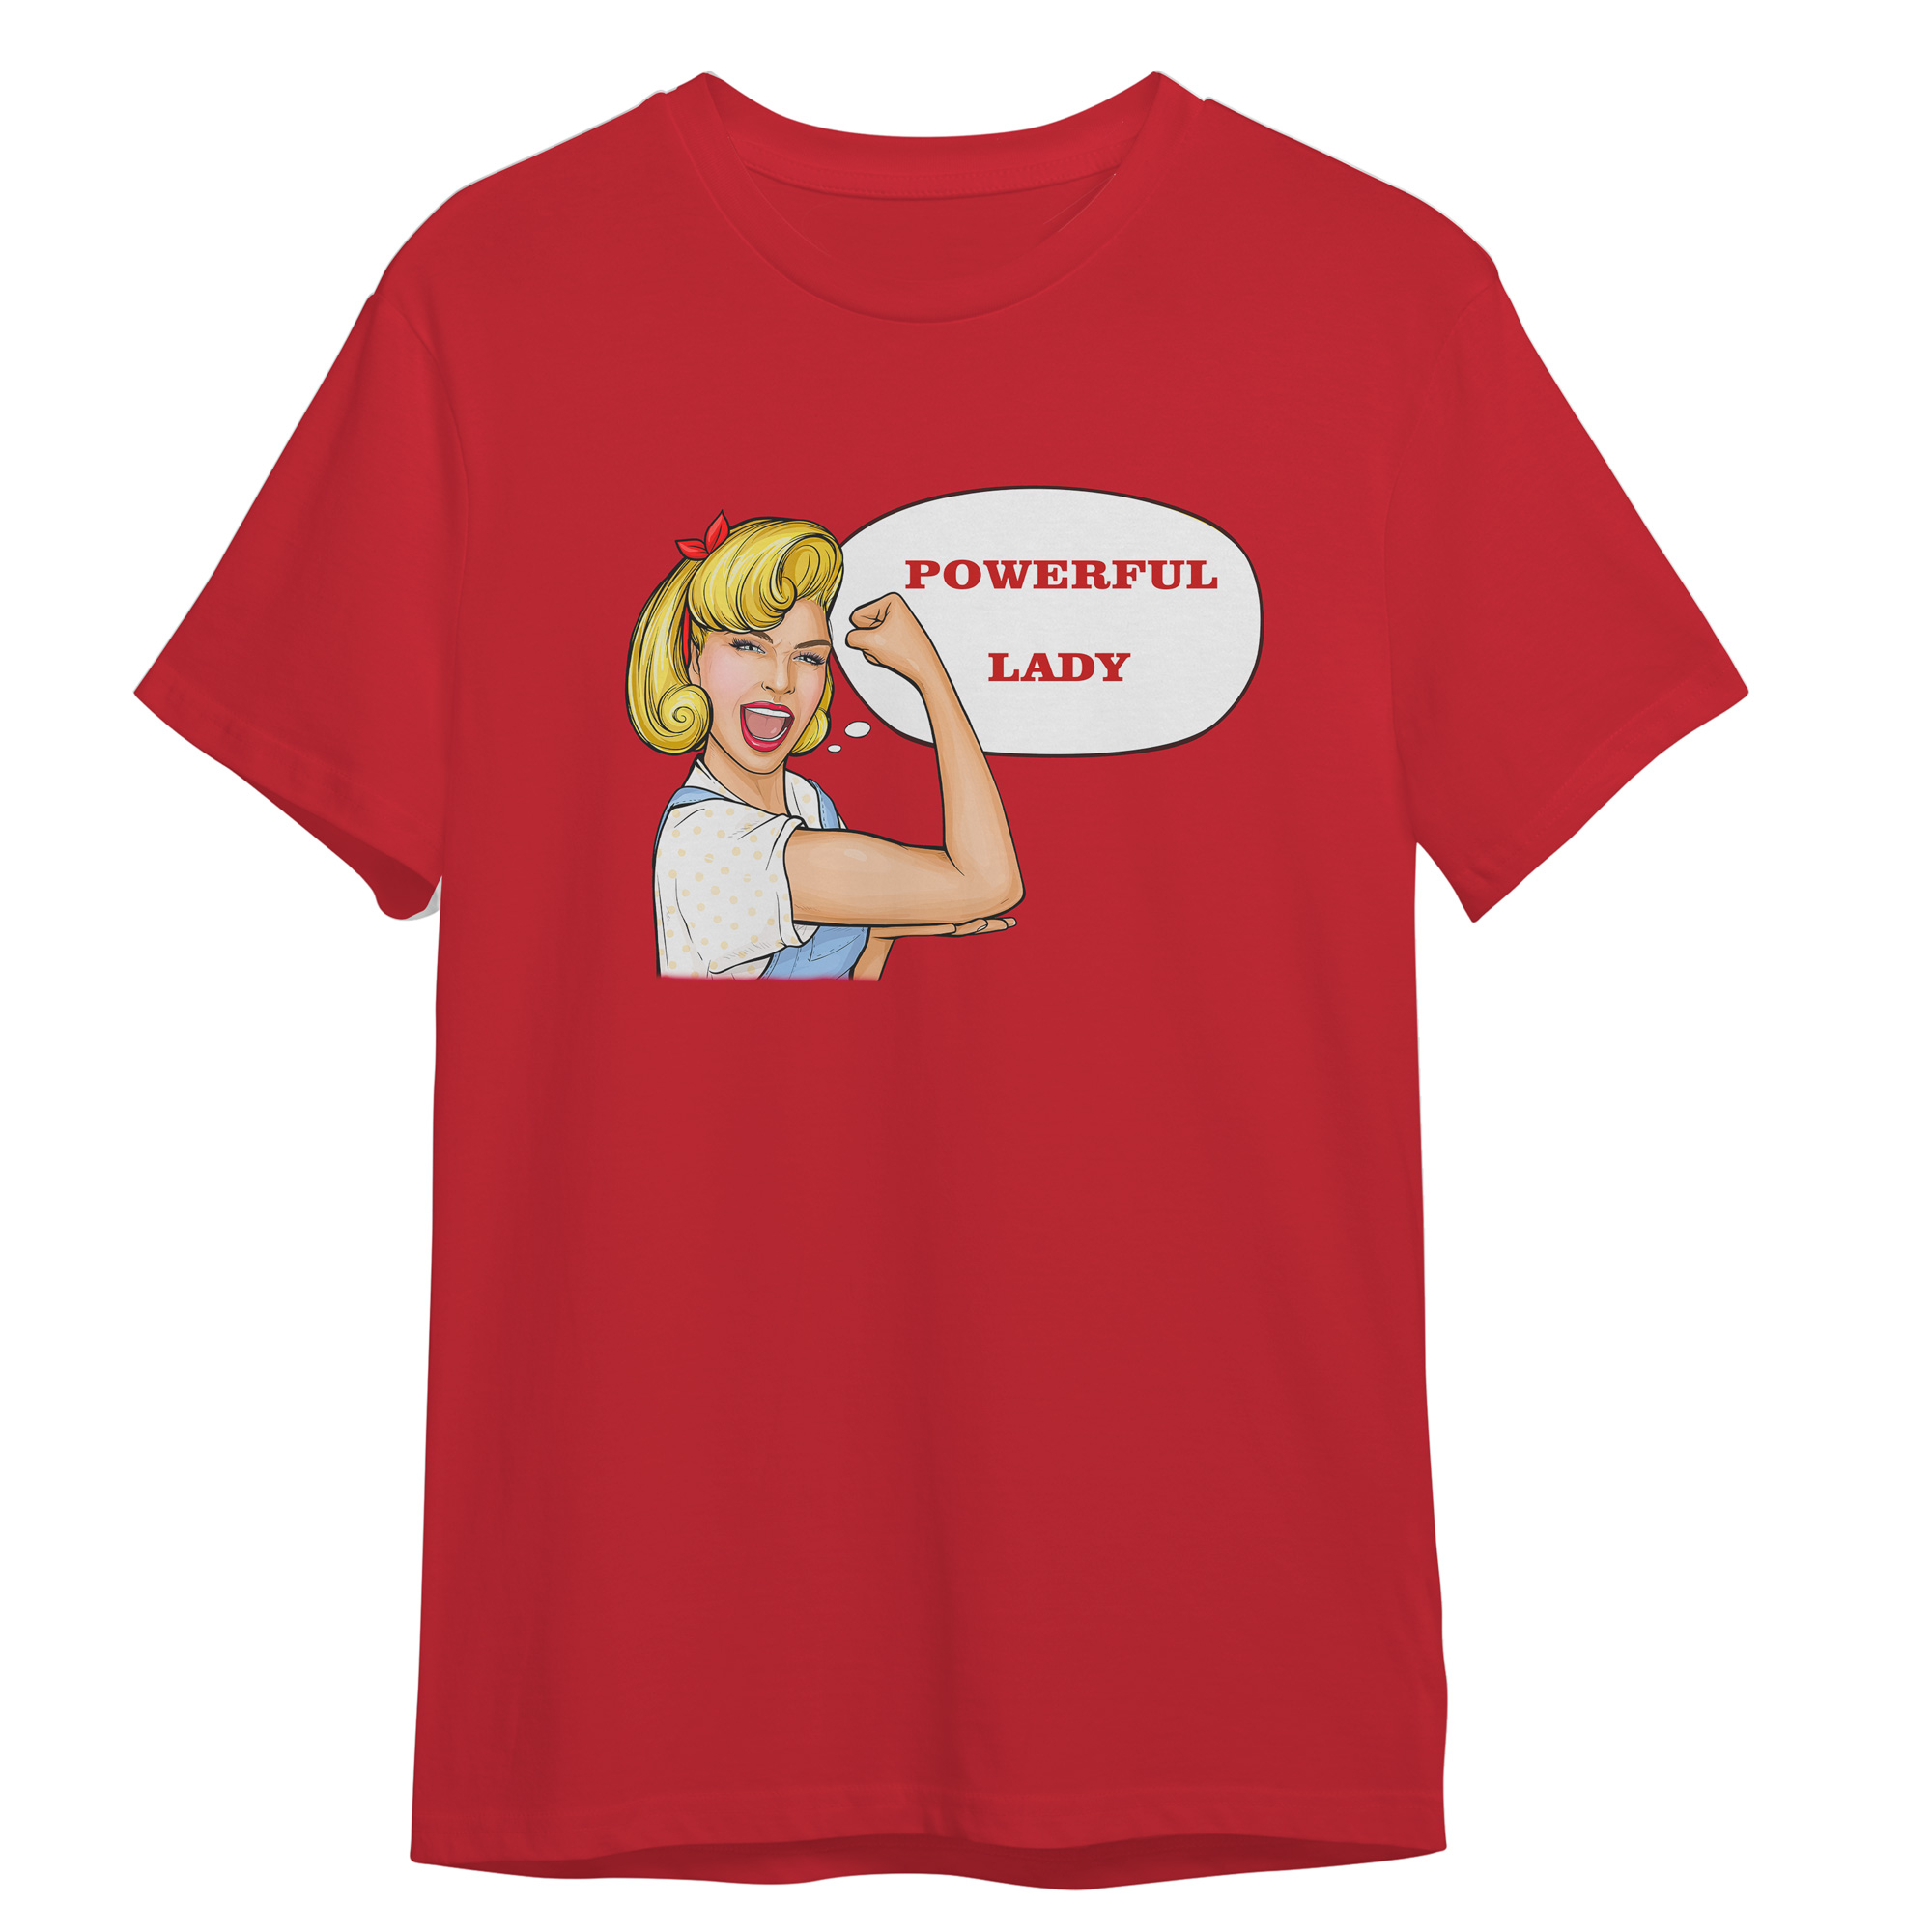 تی شرت آستین کوتاه زنانه مدل زن قدرتمند کد 0238 رنگ قرمز